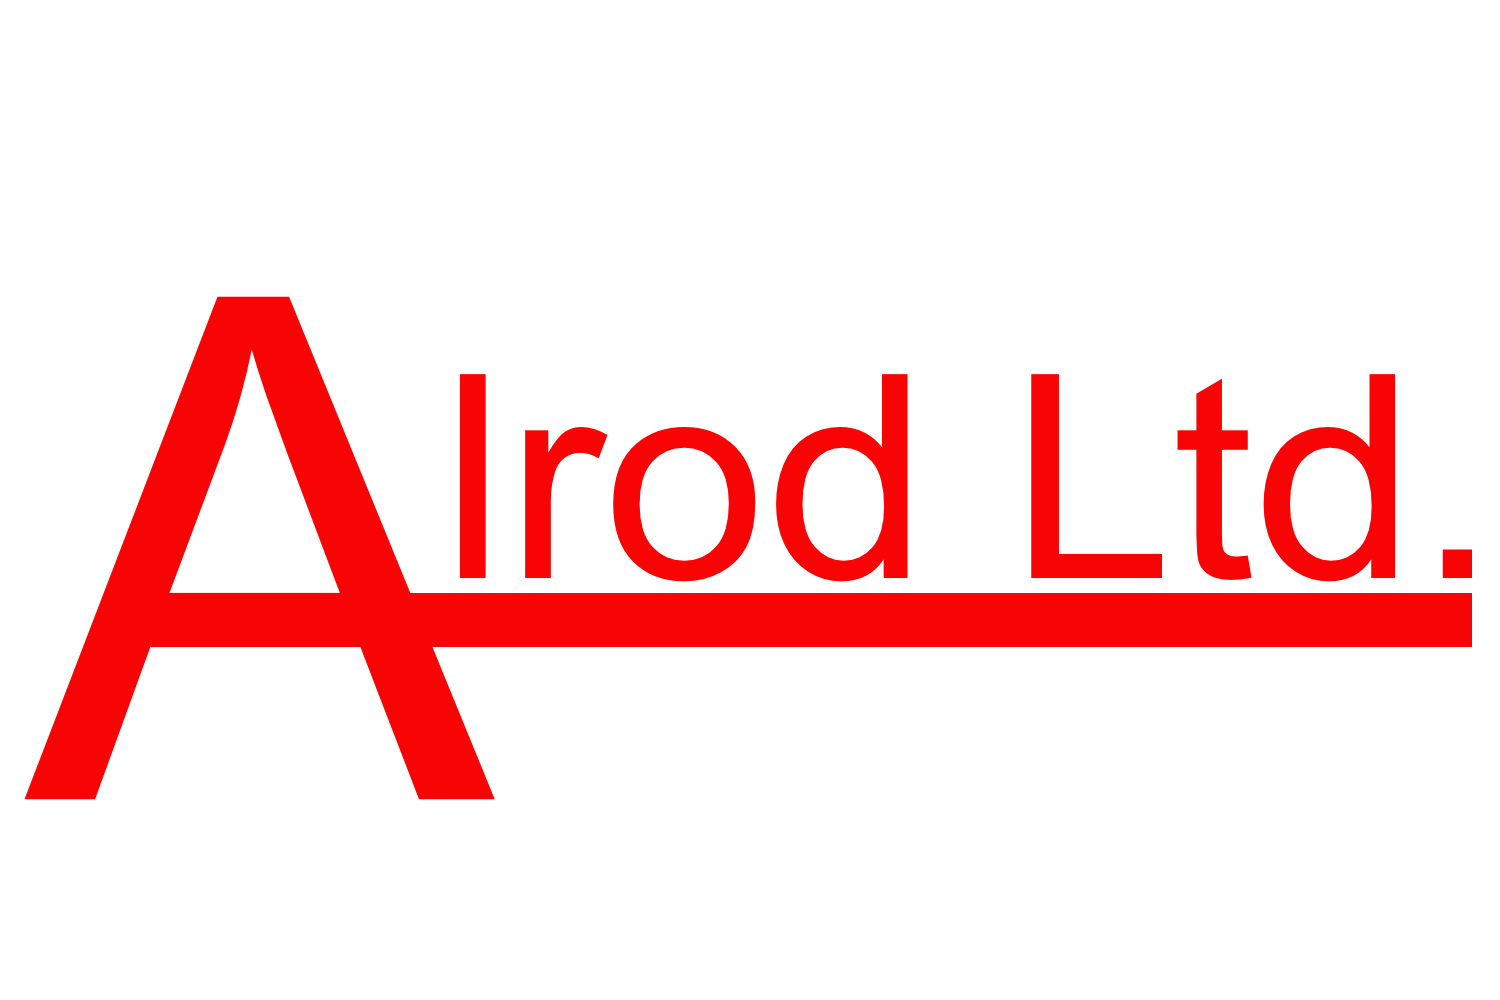 Alrod